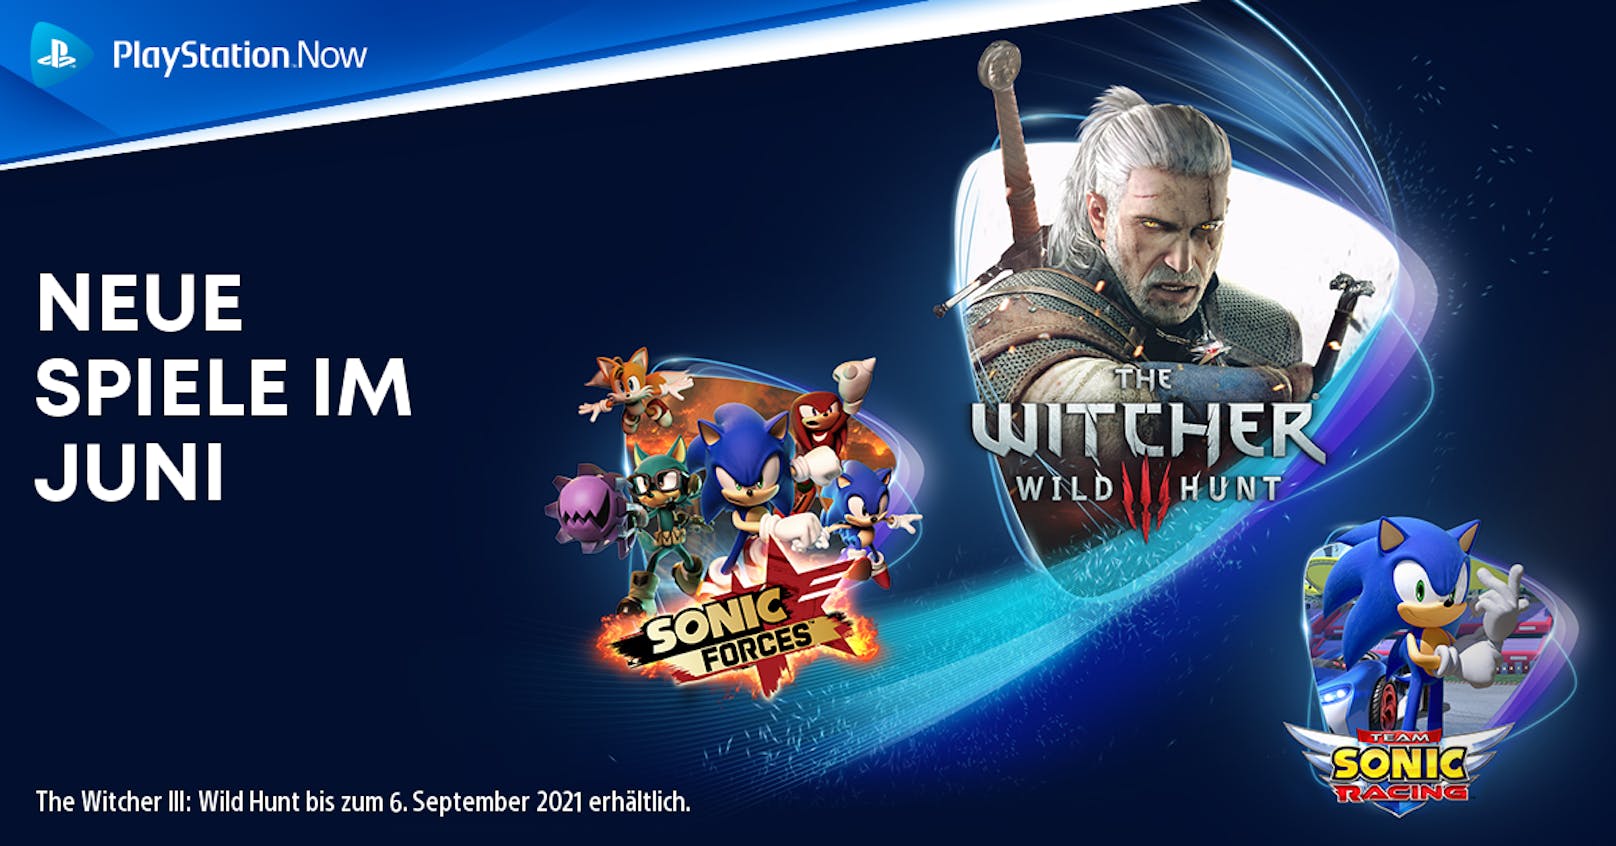 PlayStation Now-Spiele im Juni: "The Witcher III: Wild Hunt", "Virtua Fighter 5: Ultimate Showdown", "Slay the Spire" und weitere.